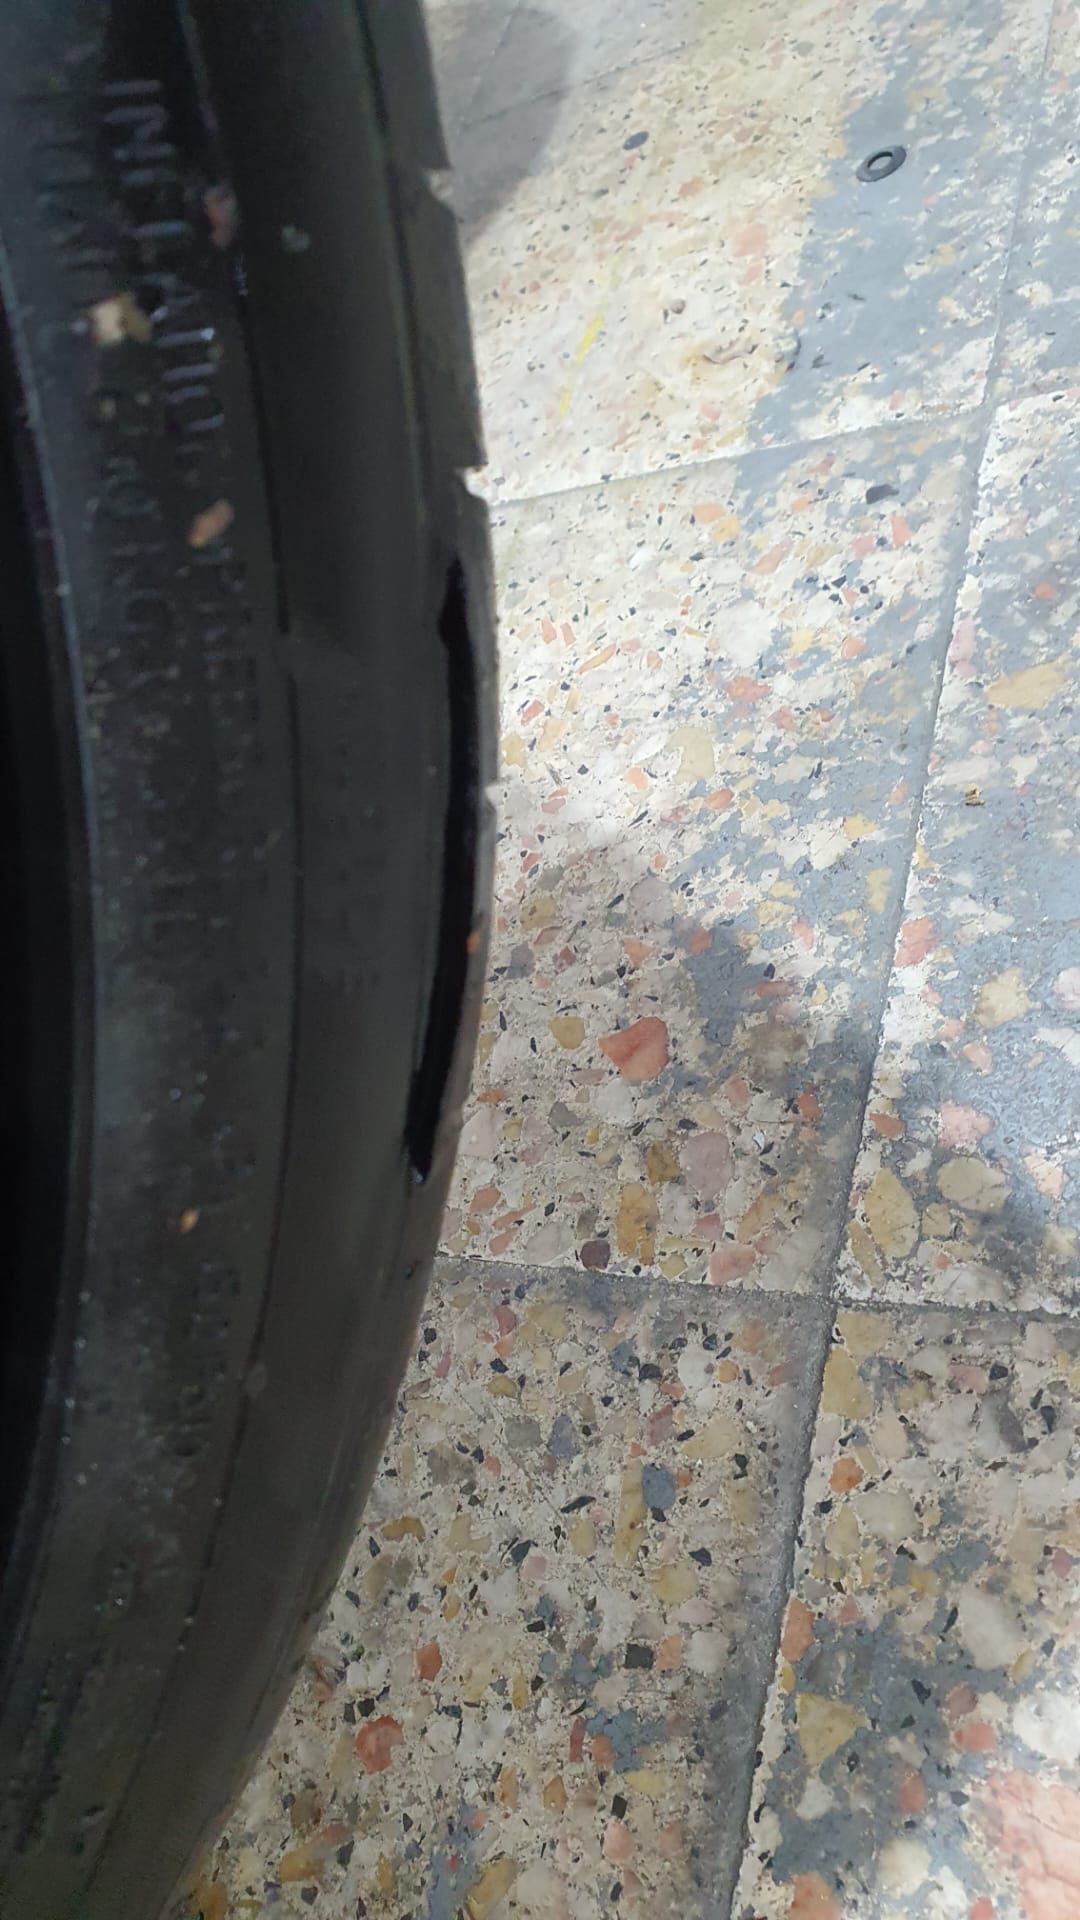 Continental Pneus - Piso do pneus a descolar